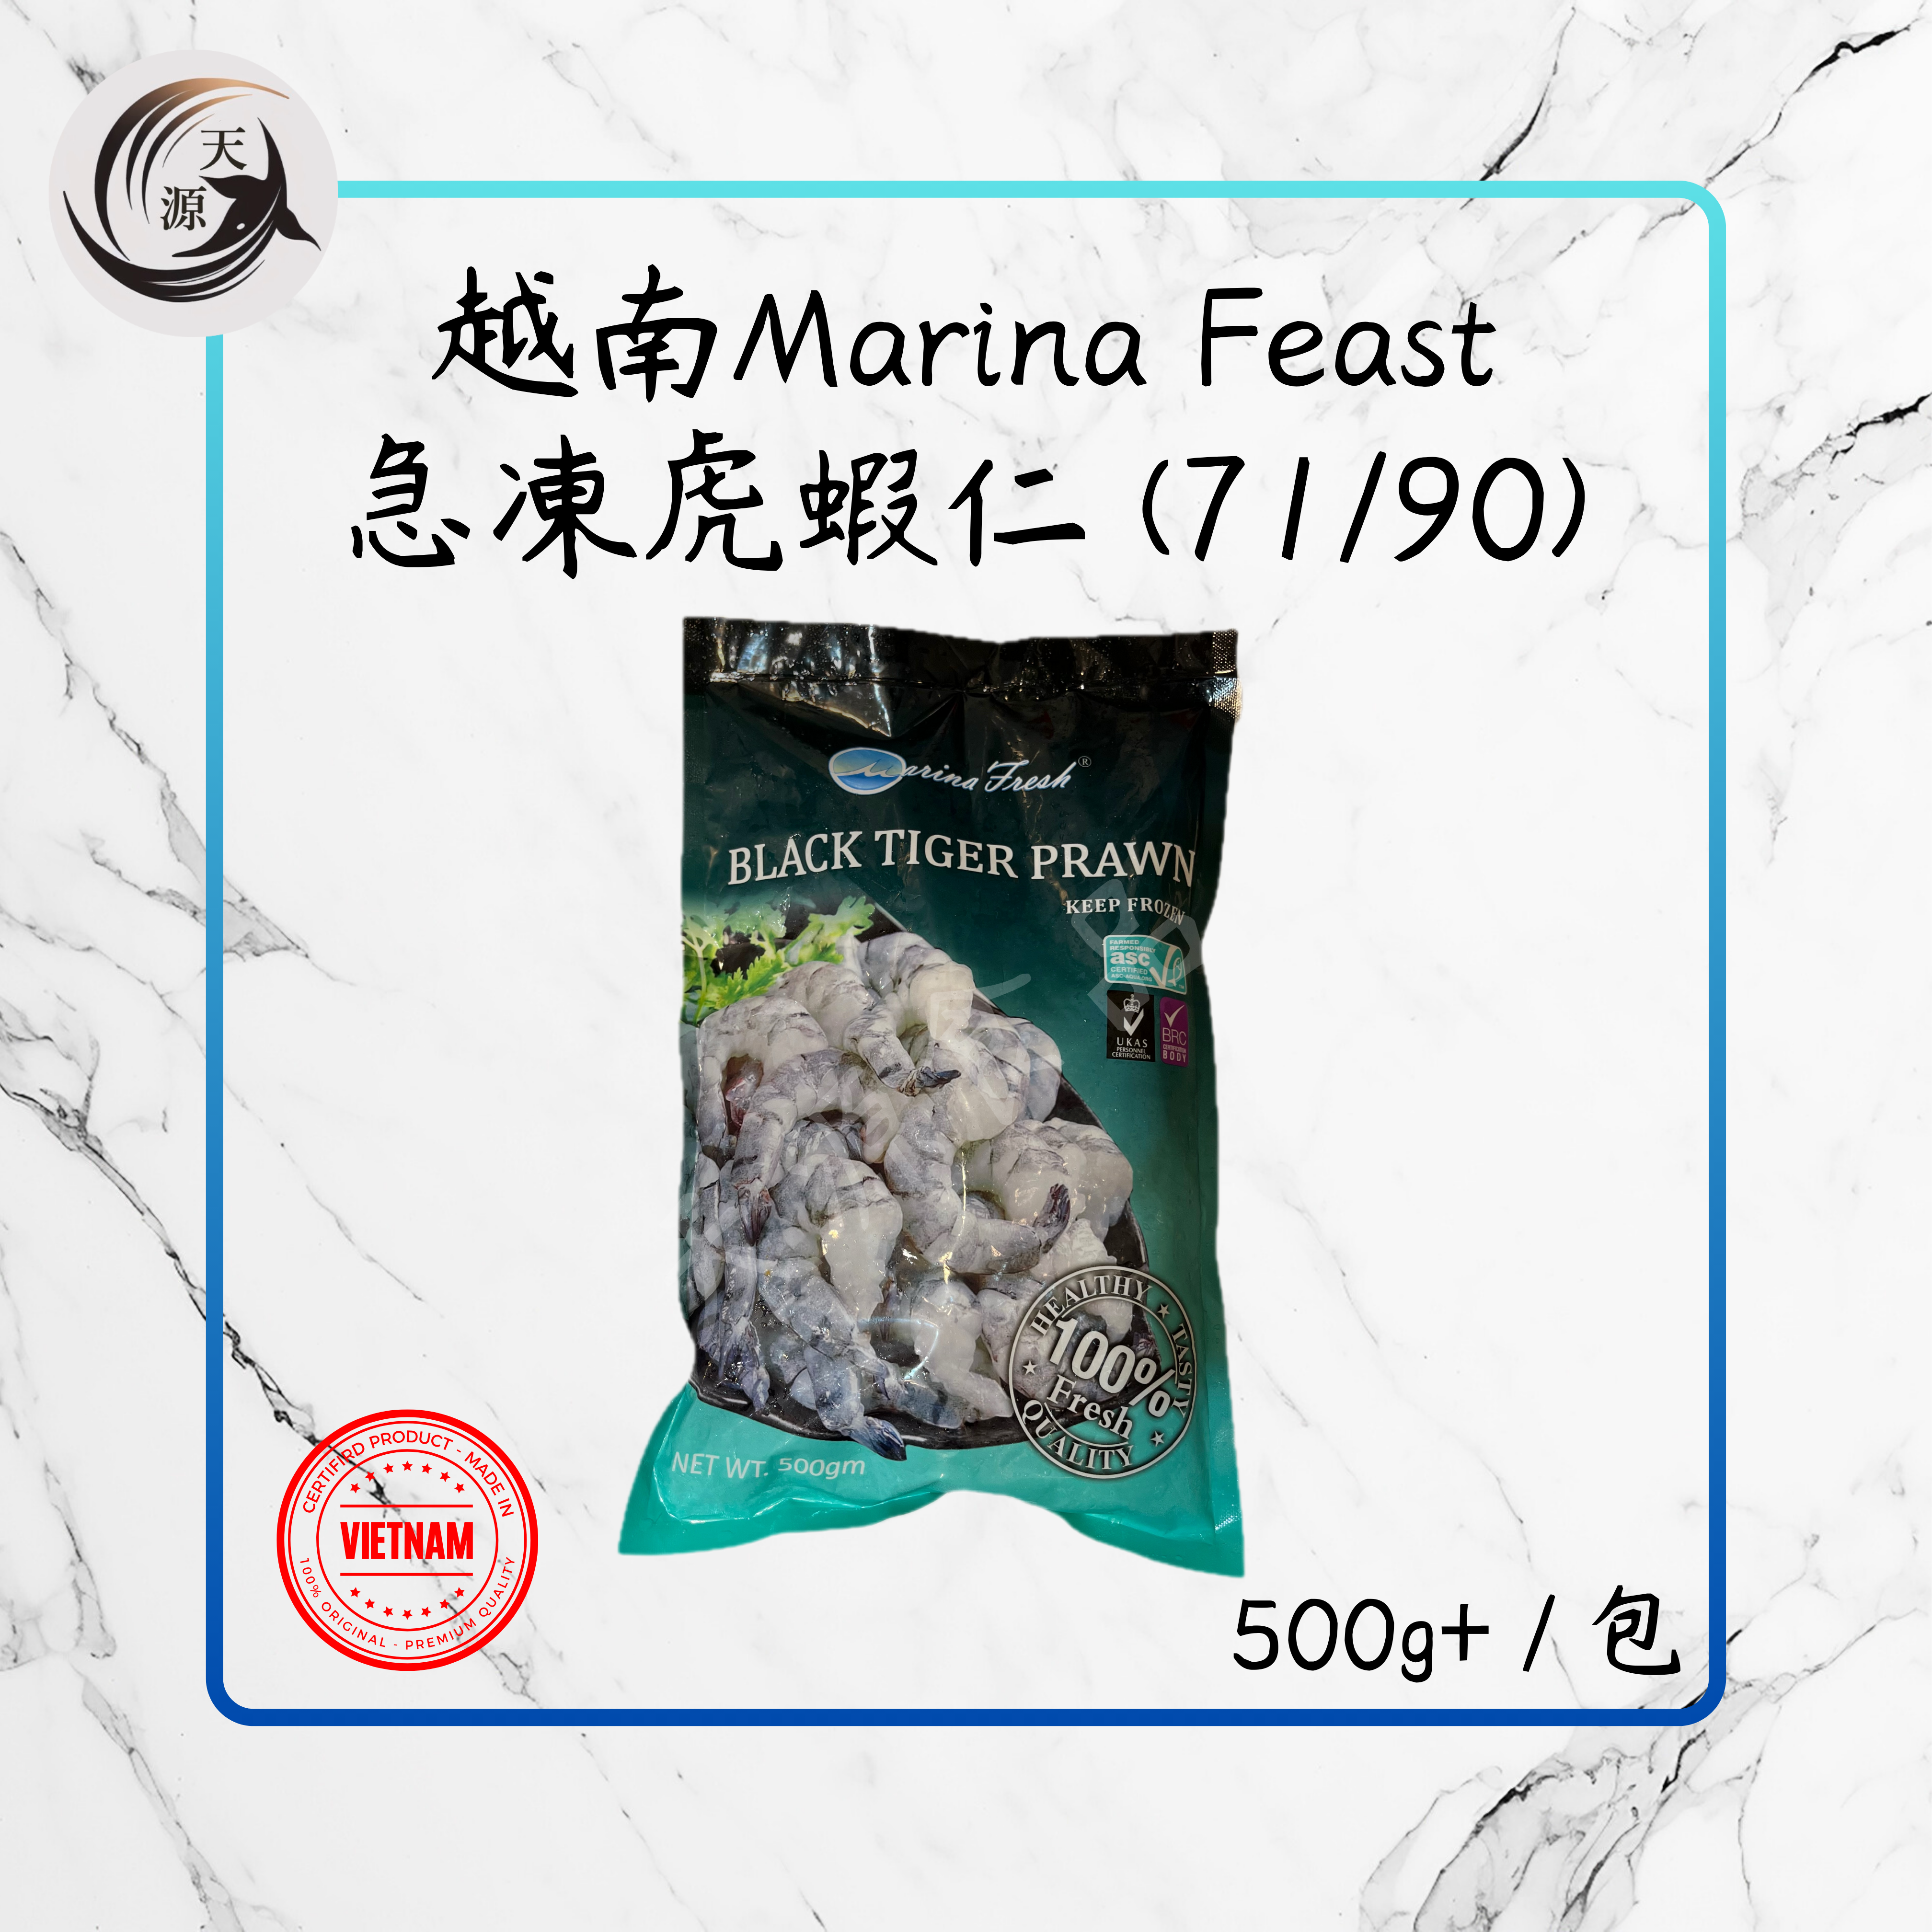 越南Marina Feast急凍虎蝦仁 (71/90) 500g